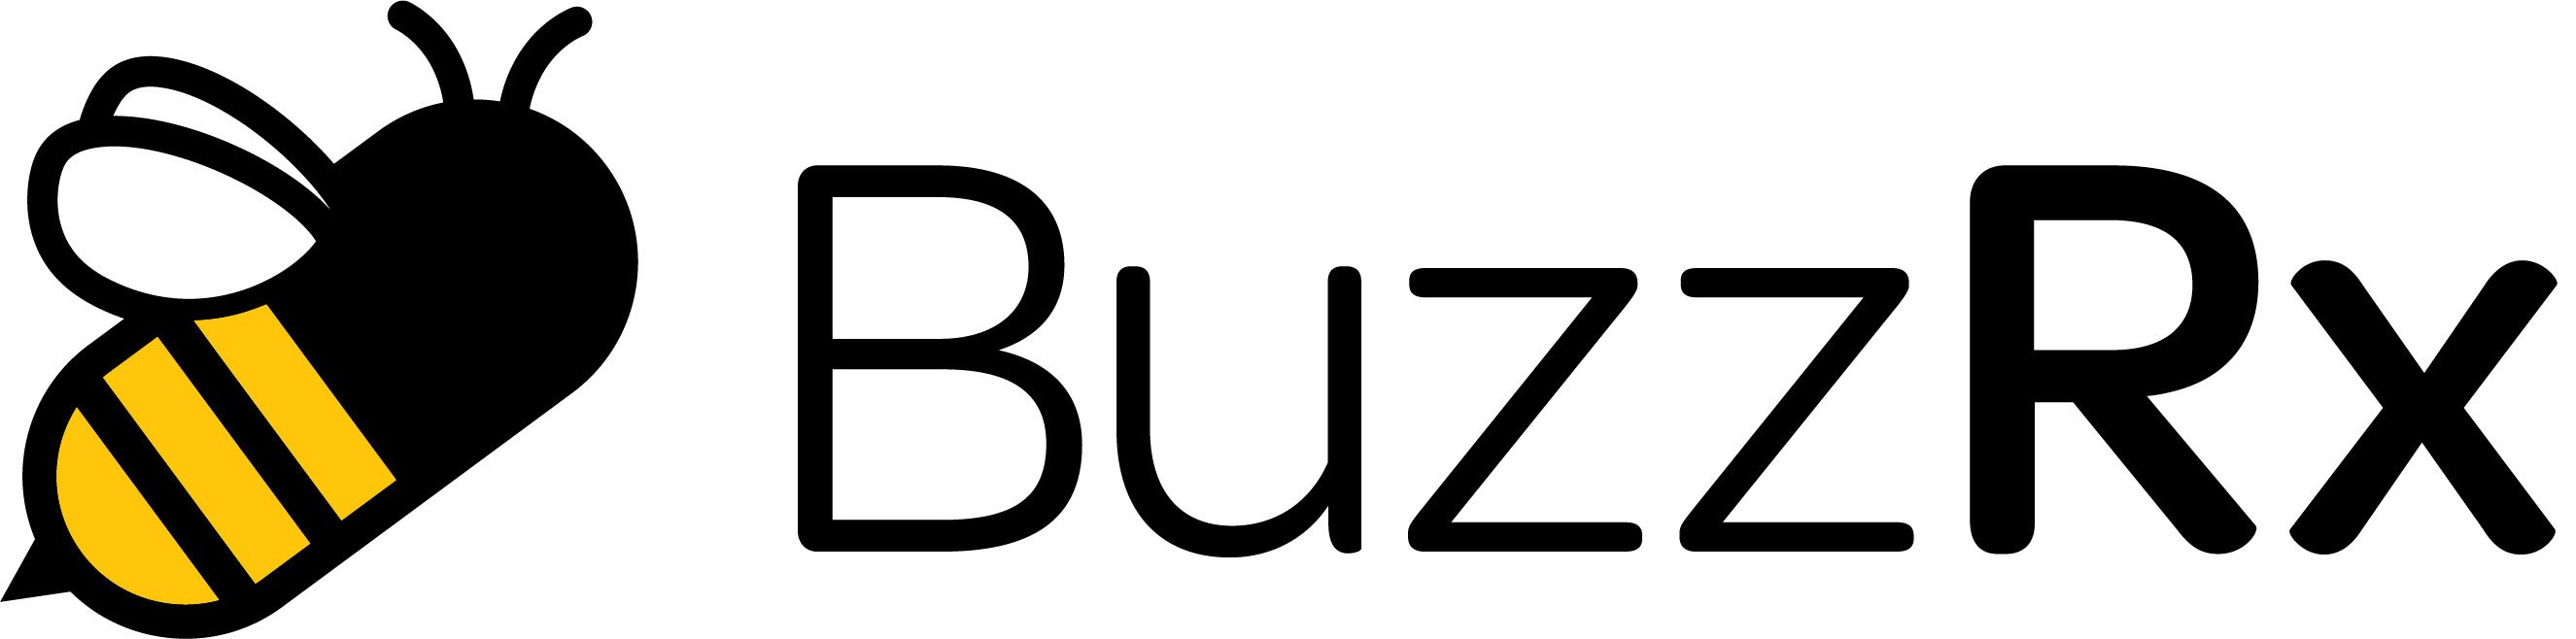 Trademark Logo BUZZRX